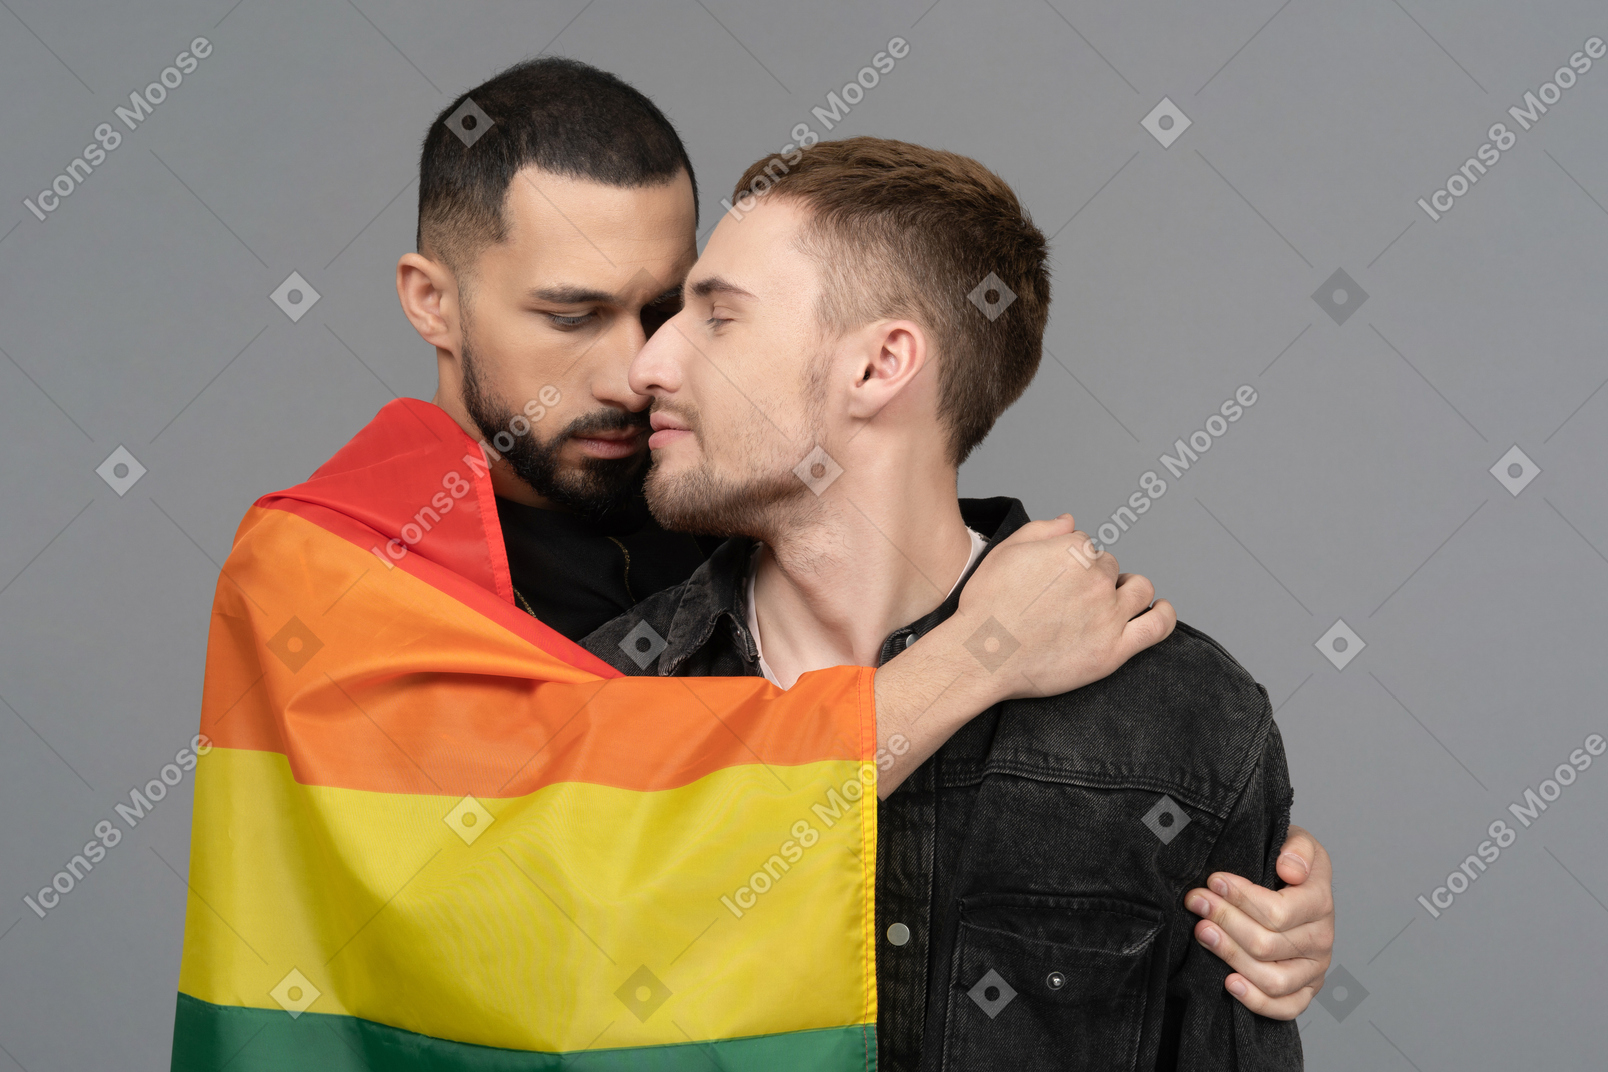 Vue de face de deux jeunes hommes s'embrassant sensuellement et portant un drapeau lgbt